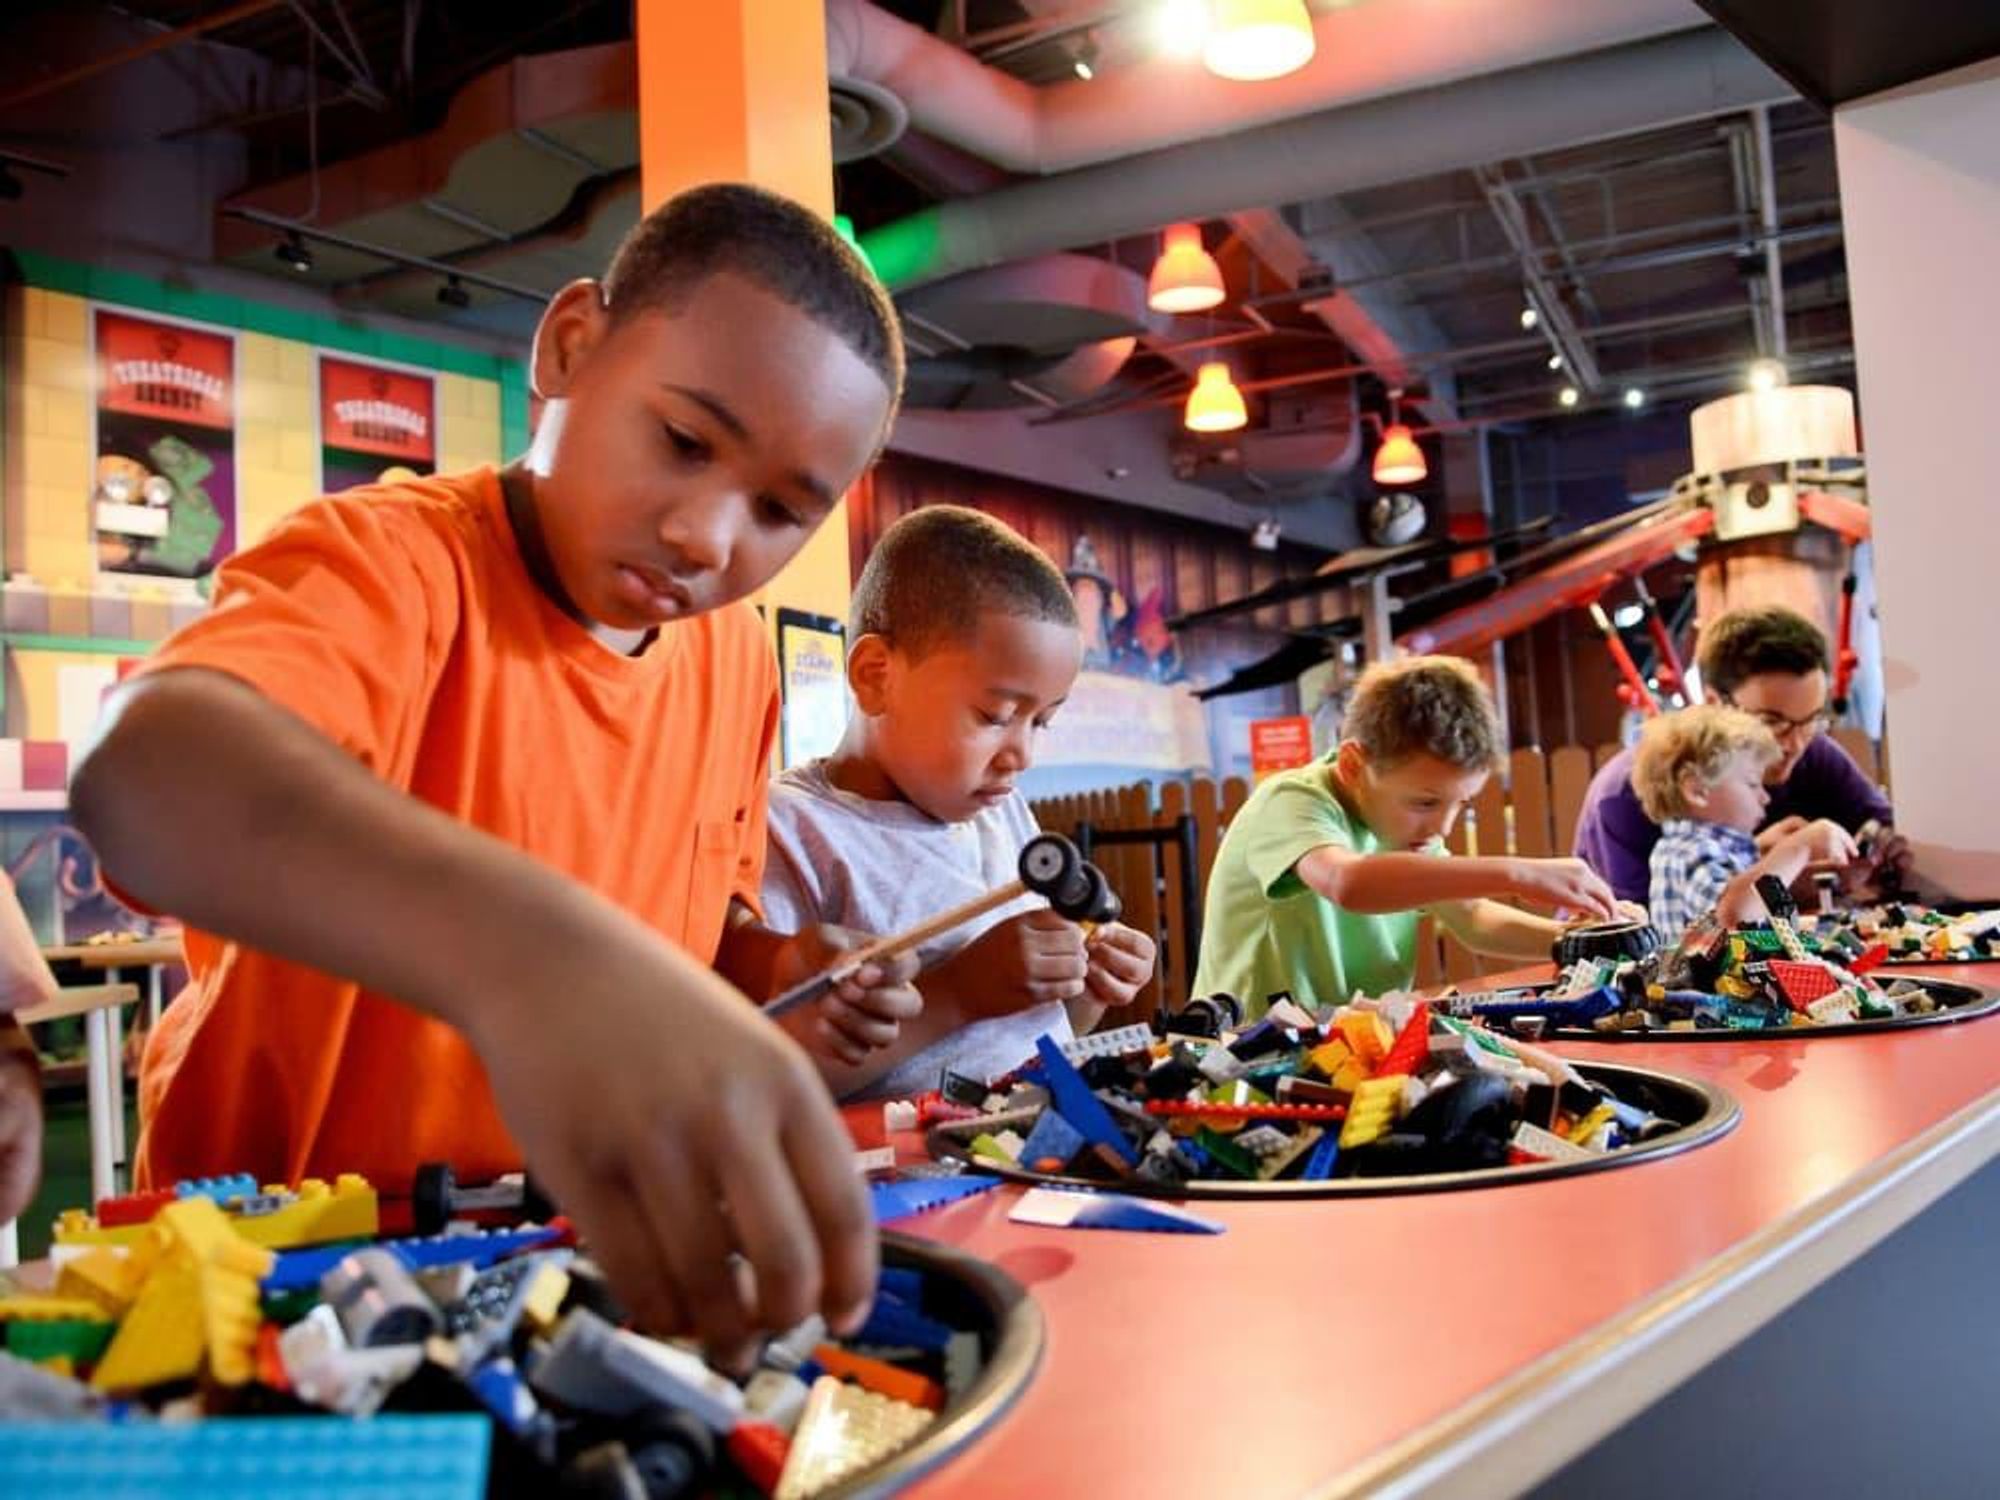 Legoland Discovery Center